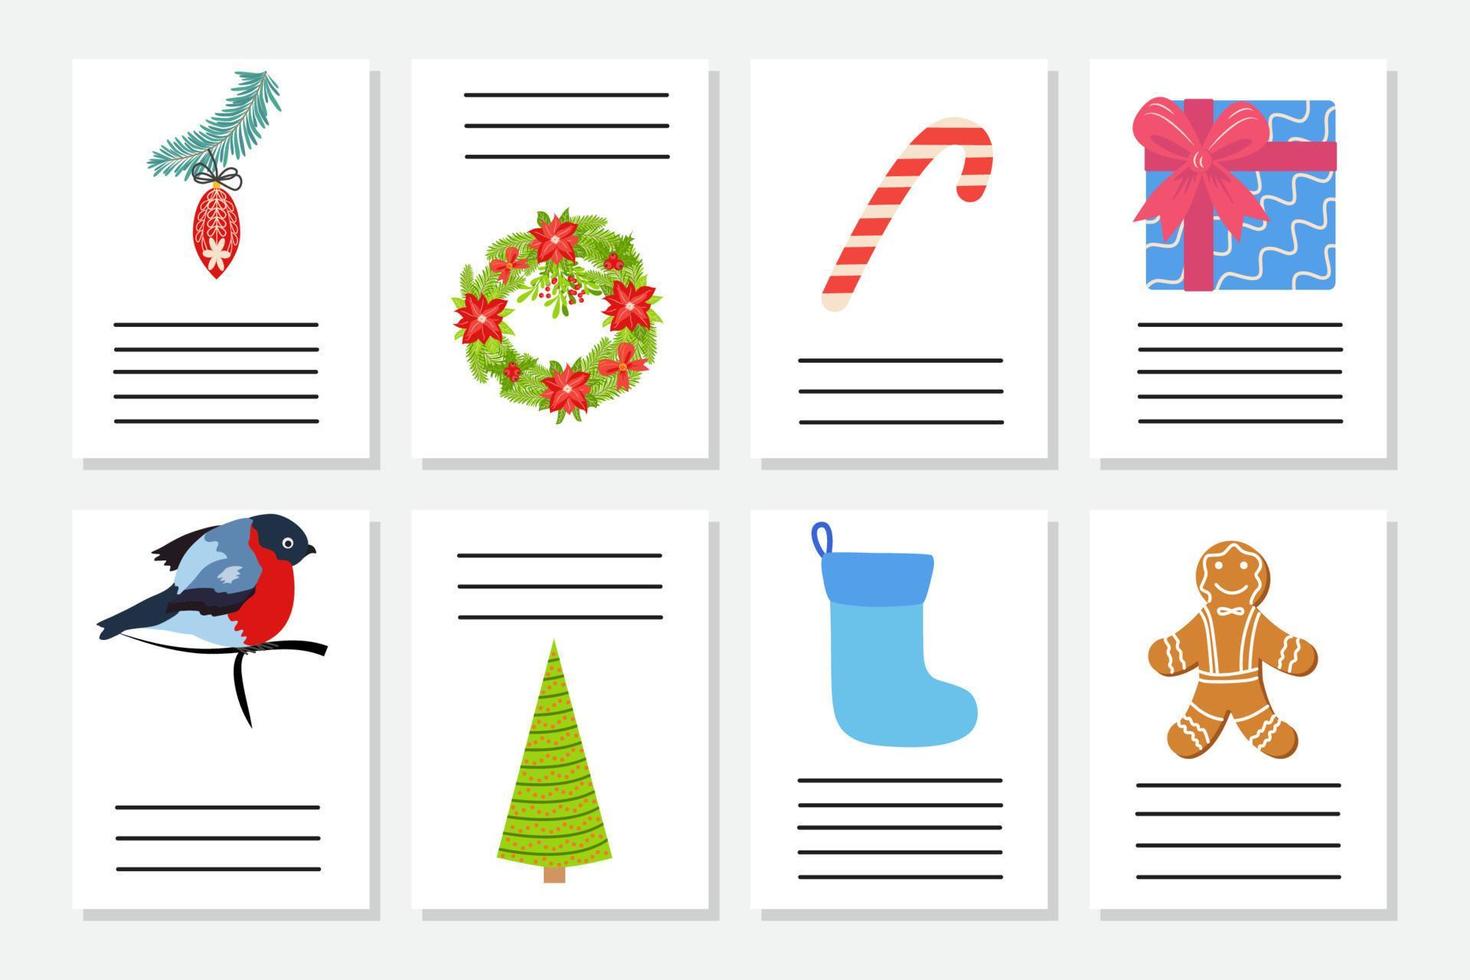 conjunto de saudação de natal ou convite. cartões postais com símbolos de ano novo, árvore de natal, flocos de neve, presentes, pirulito vetor